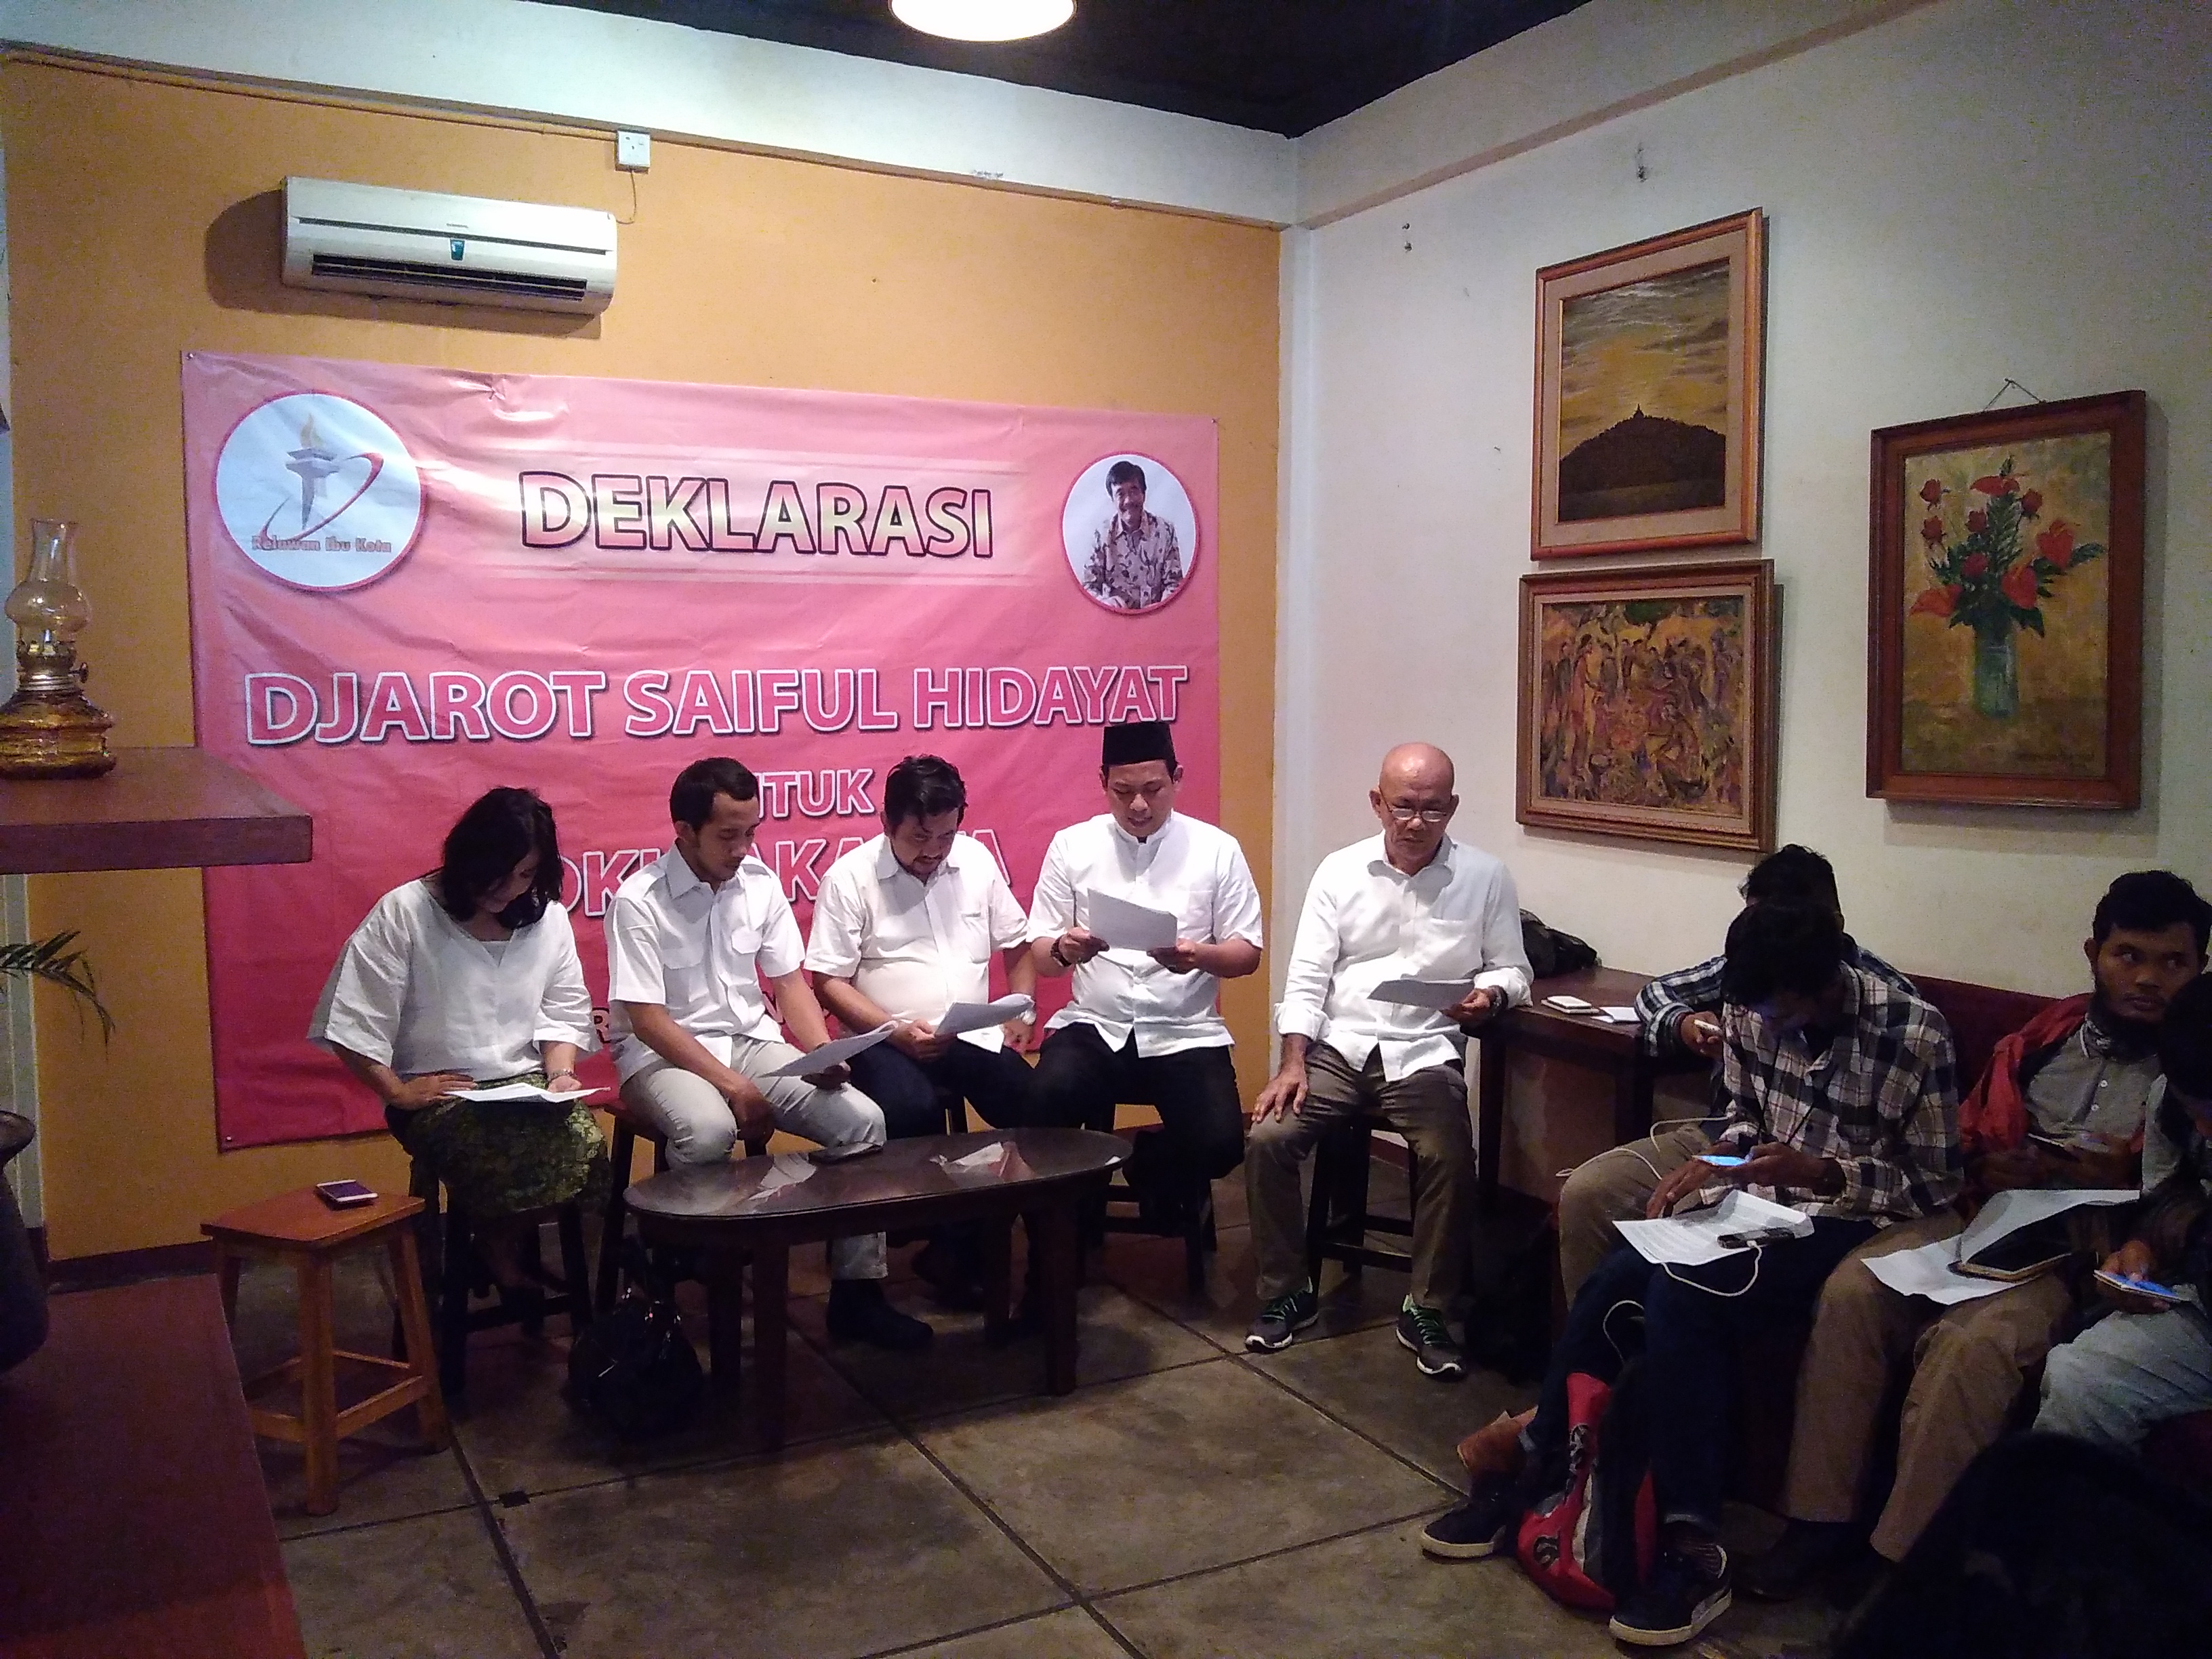 Relawan Ibukota: Mari Bersama Djarot Mewujudkan Jakarta Lebih Baik